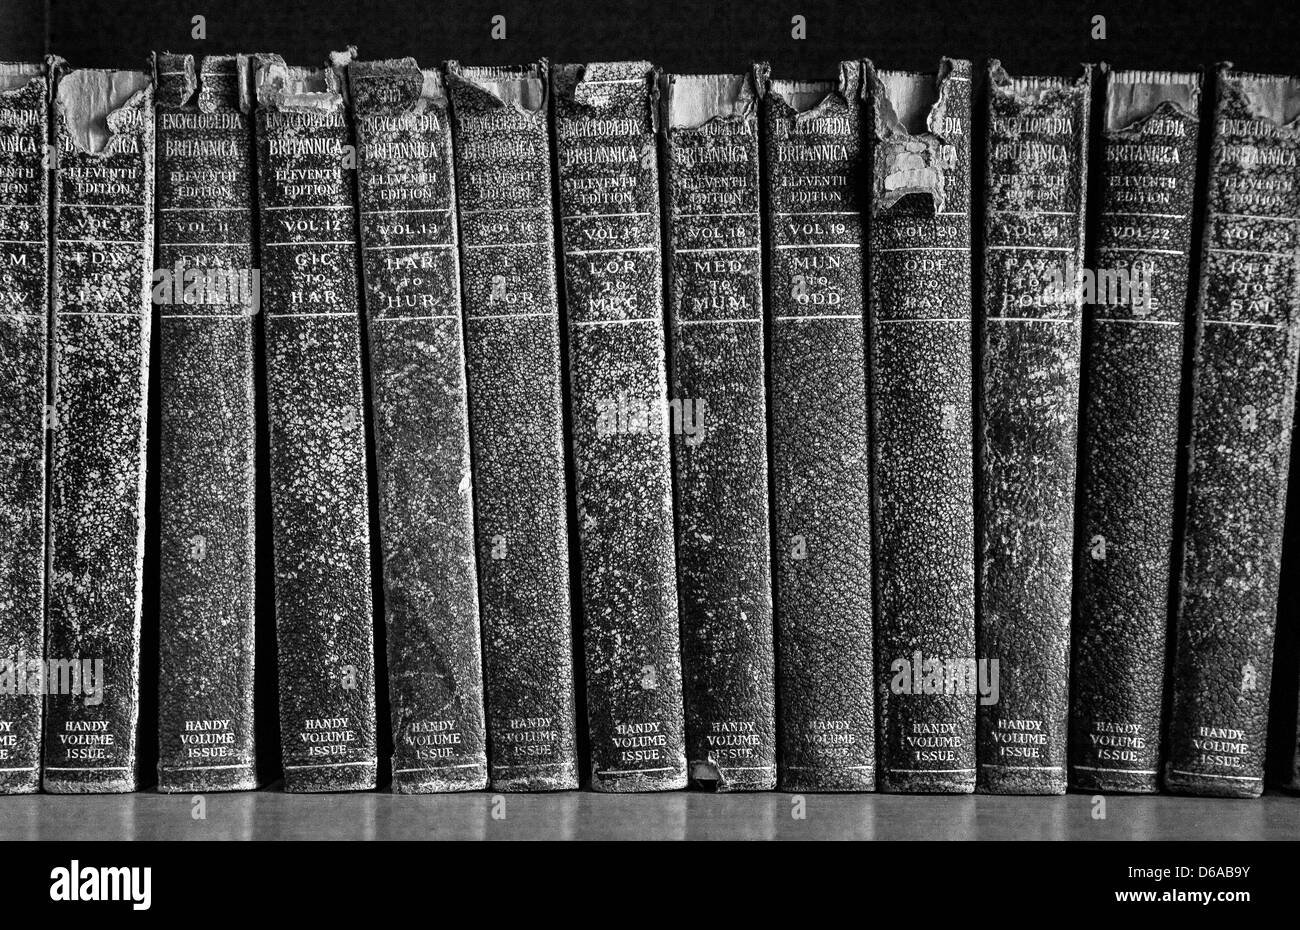 Forrado en cuero viejo Britannica en un estante Foto de stock